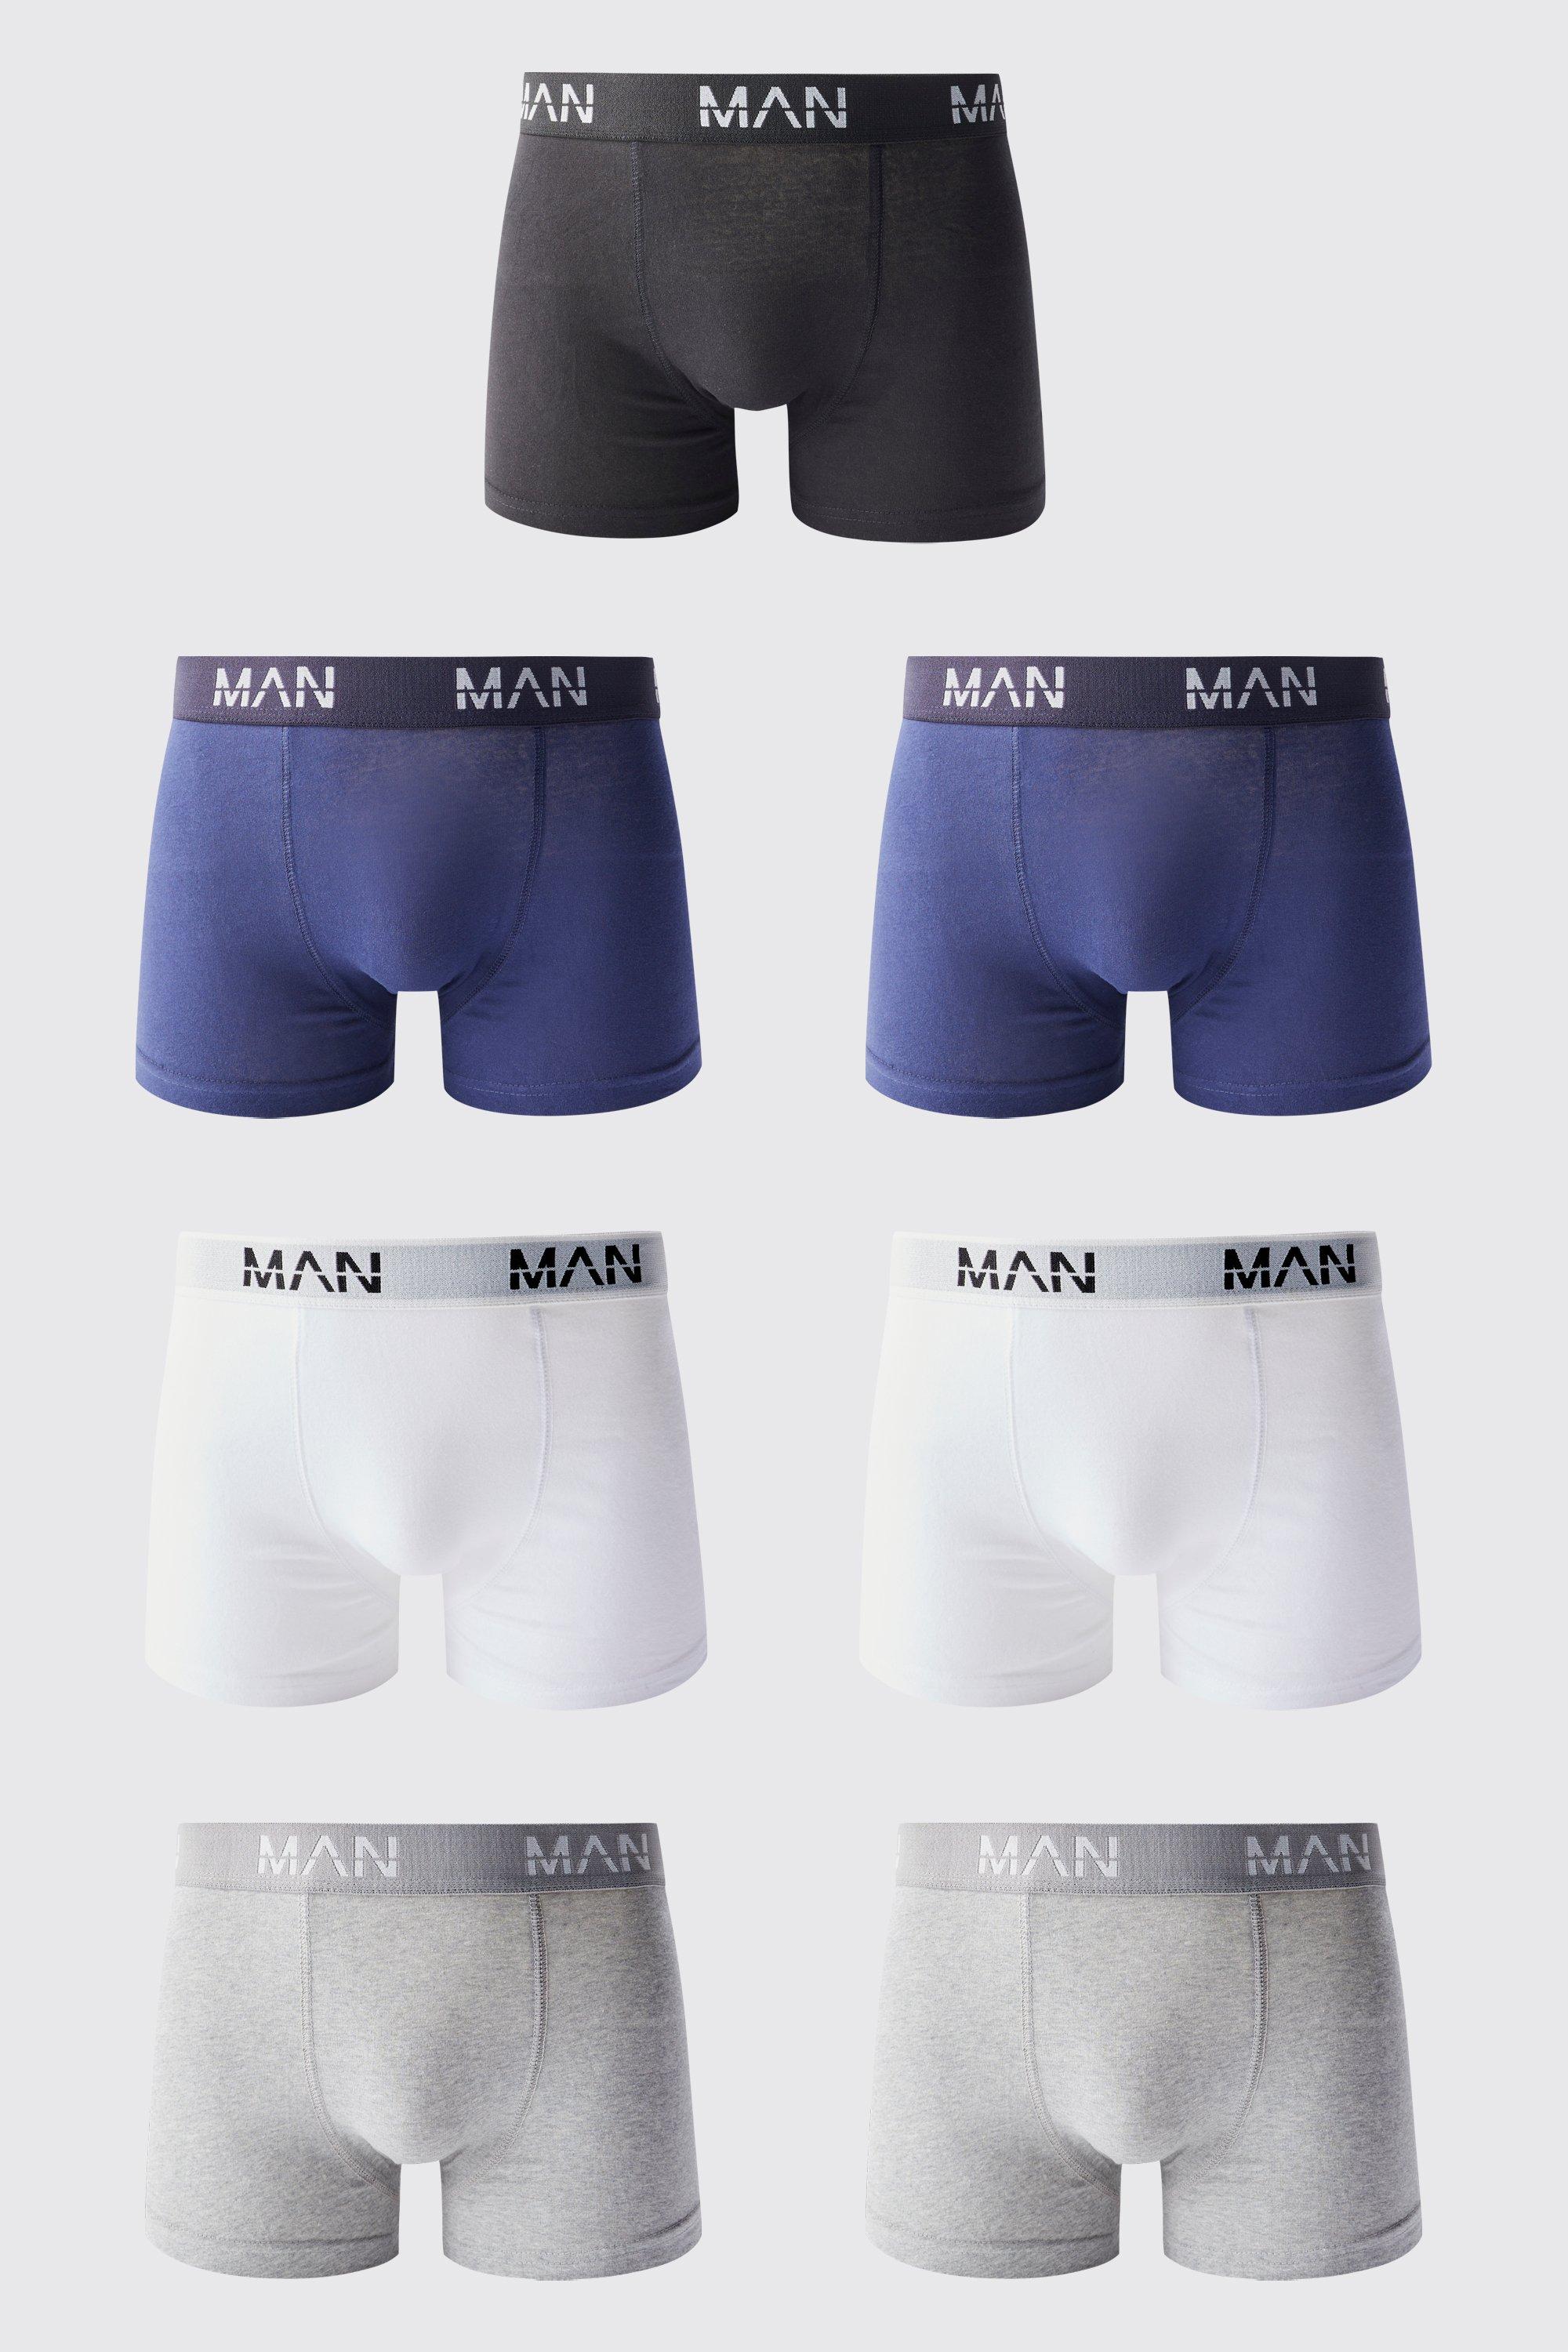 lot de 7 boxers colorés à inscription - man homme - multicolore - l, multicolore